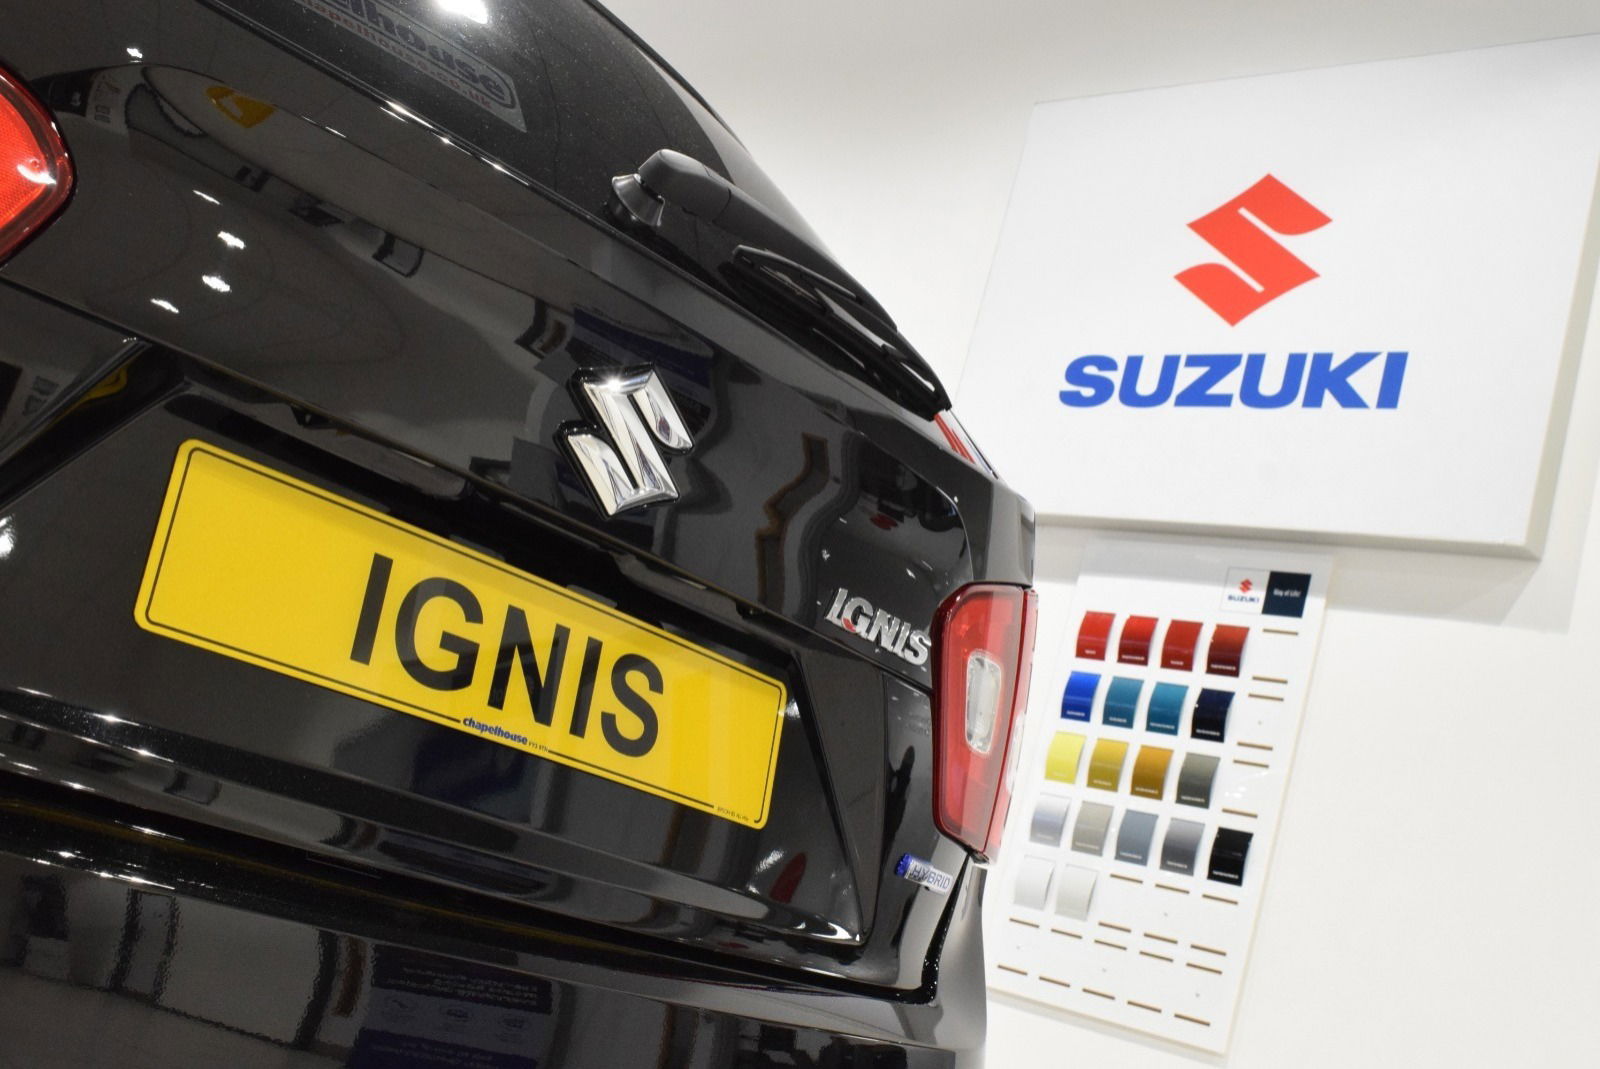 Suzuki Ignis in black